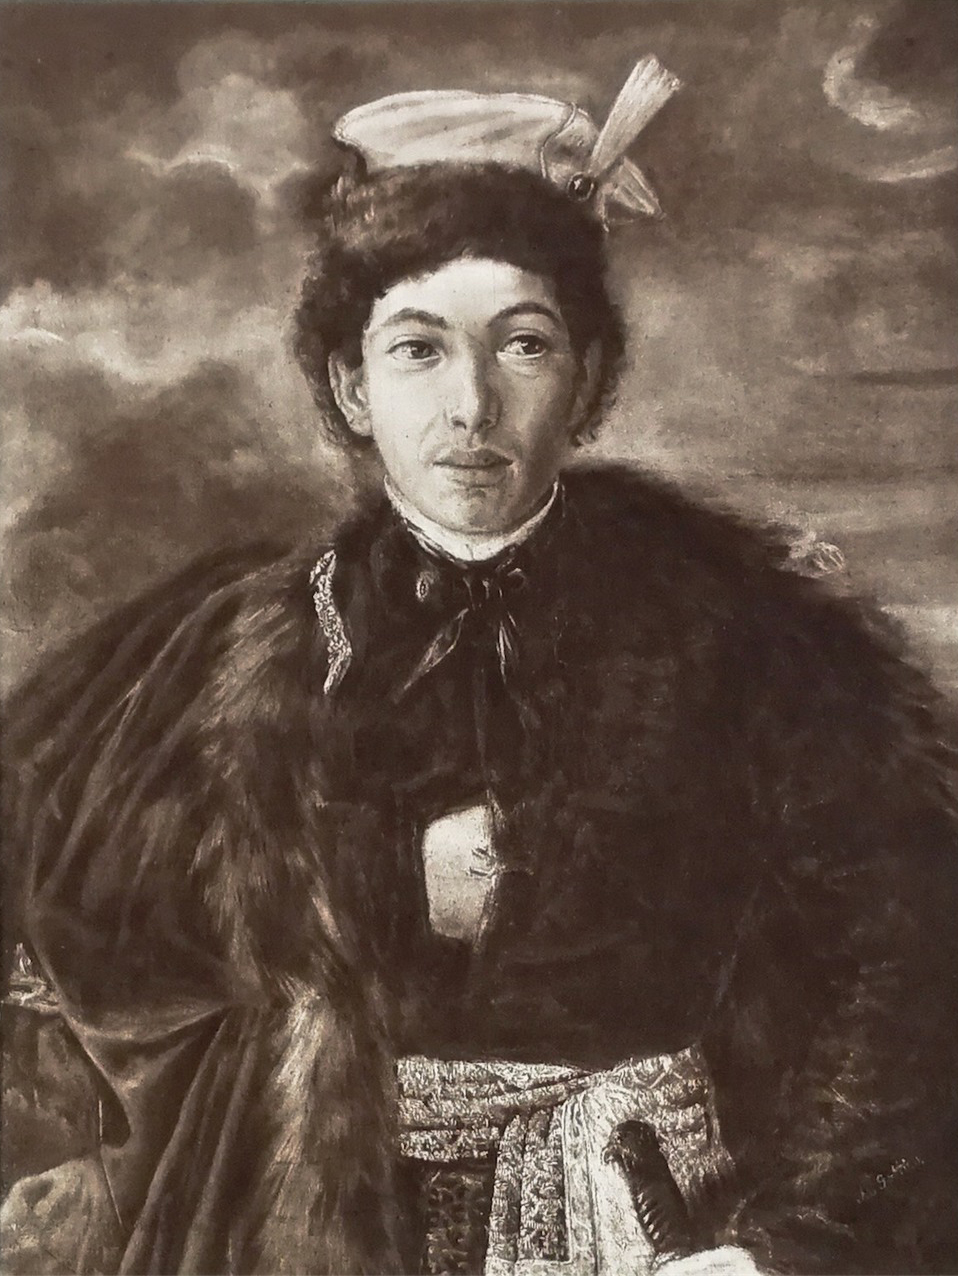 Maurycy Gottlieb "Autoportret w stroju szlachcica polskiego", 1874 rok, (rotograwiura), źródło: Warszawski Dom Aukcyjny